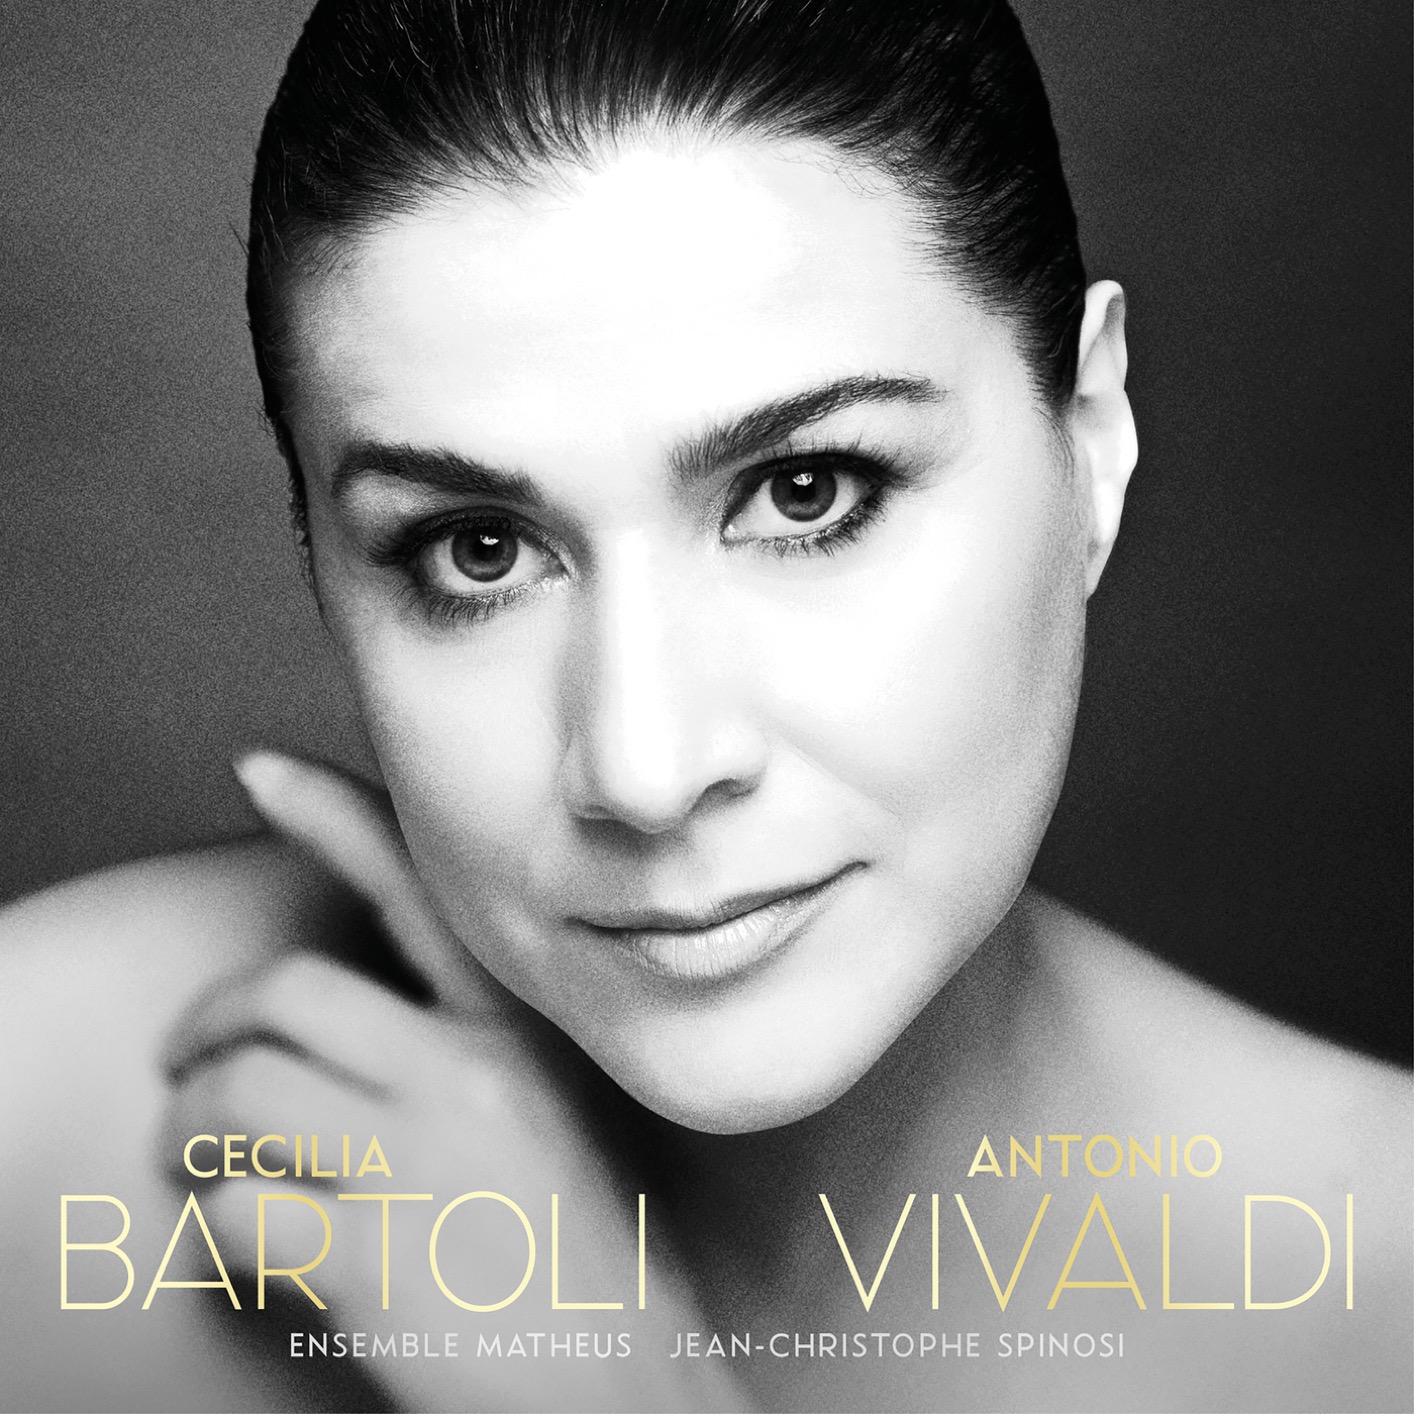 Cecilia Bartoli - Antonio Vivaldi (2018) [FLAC 24bit/96kHz]